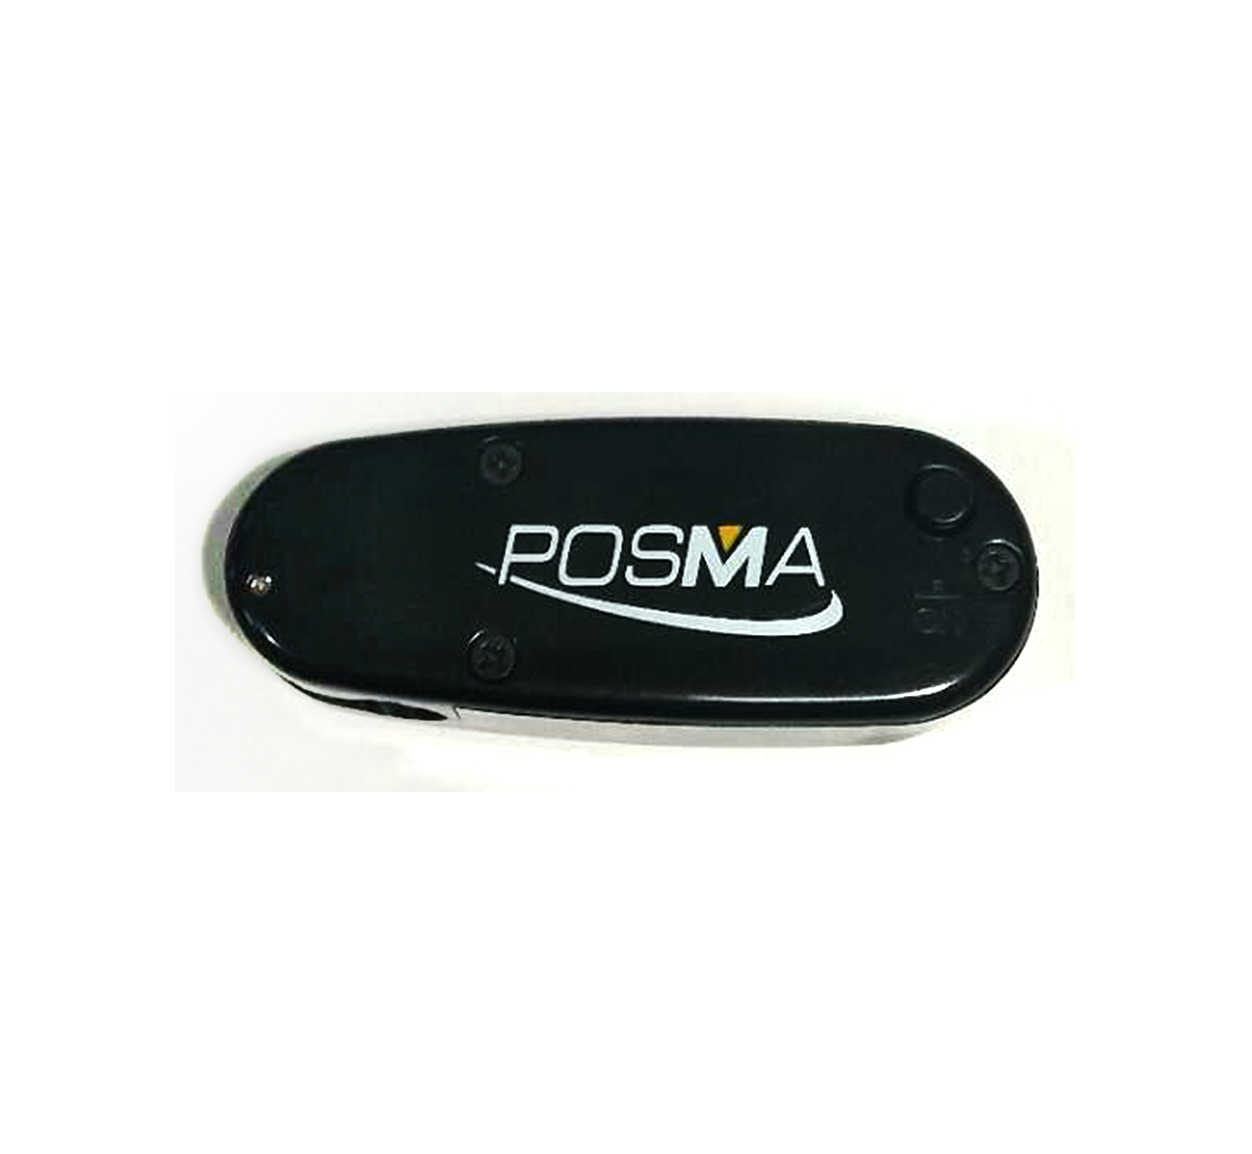 Posma PG090A 高爾夫推桿訓練長軌道套裝+Posma高爾夫球+可拆式木製推桿+自動回球器+推桿紅外線輔助器